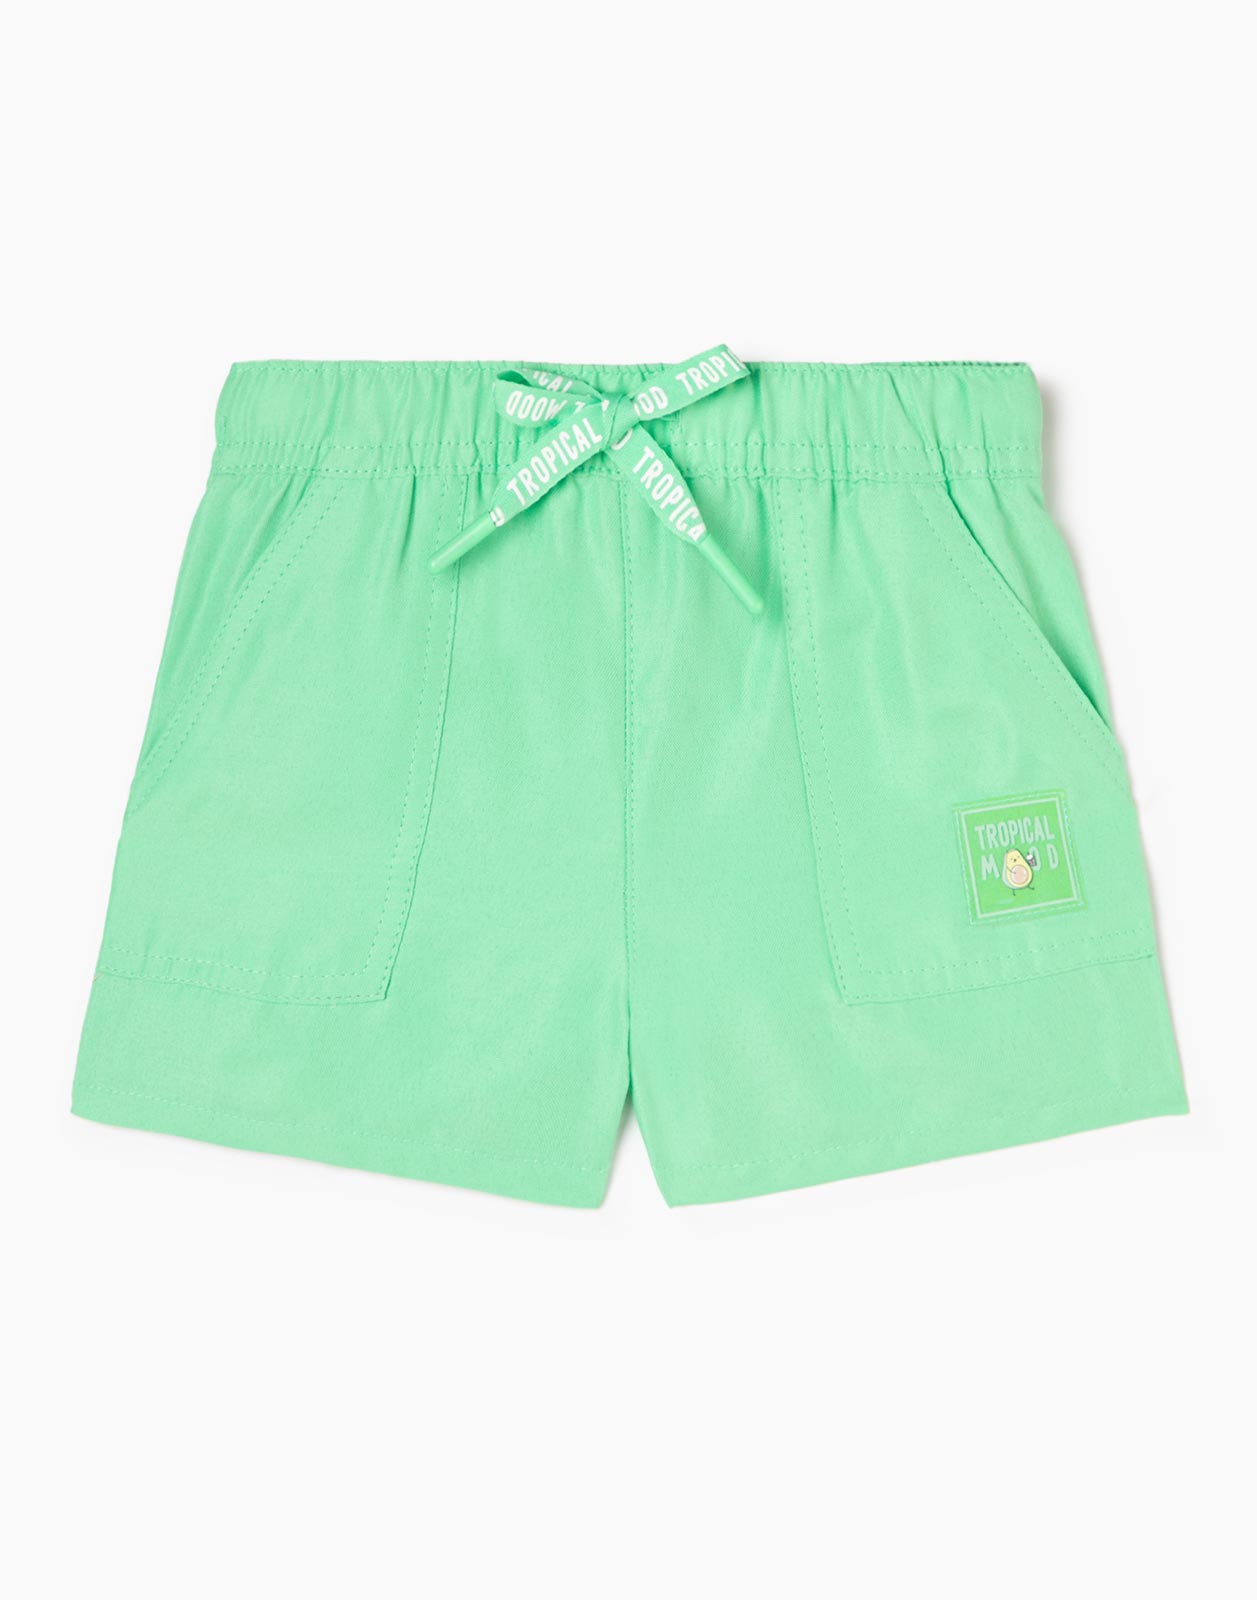 Зелёные шорты с нашивкой Tropical mood для девочки р.128